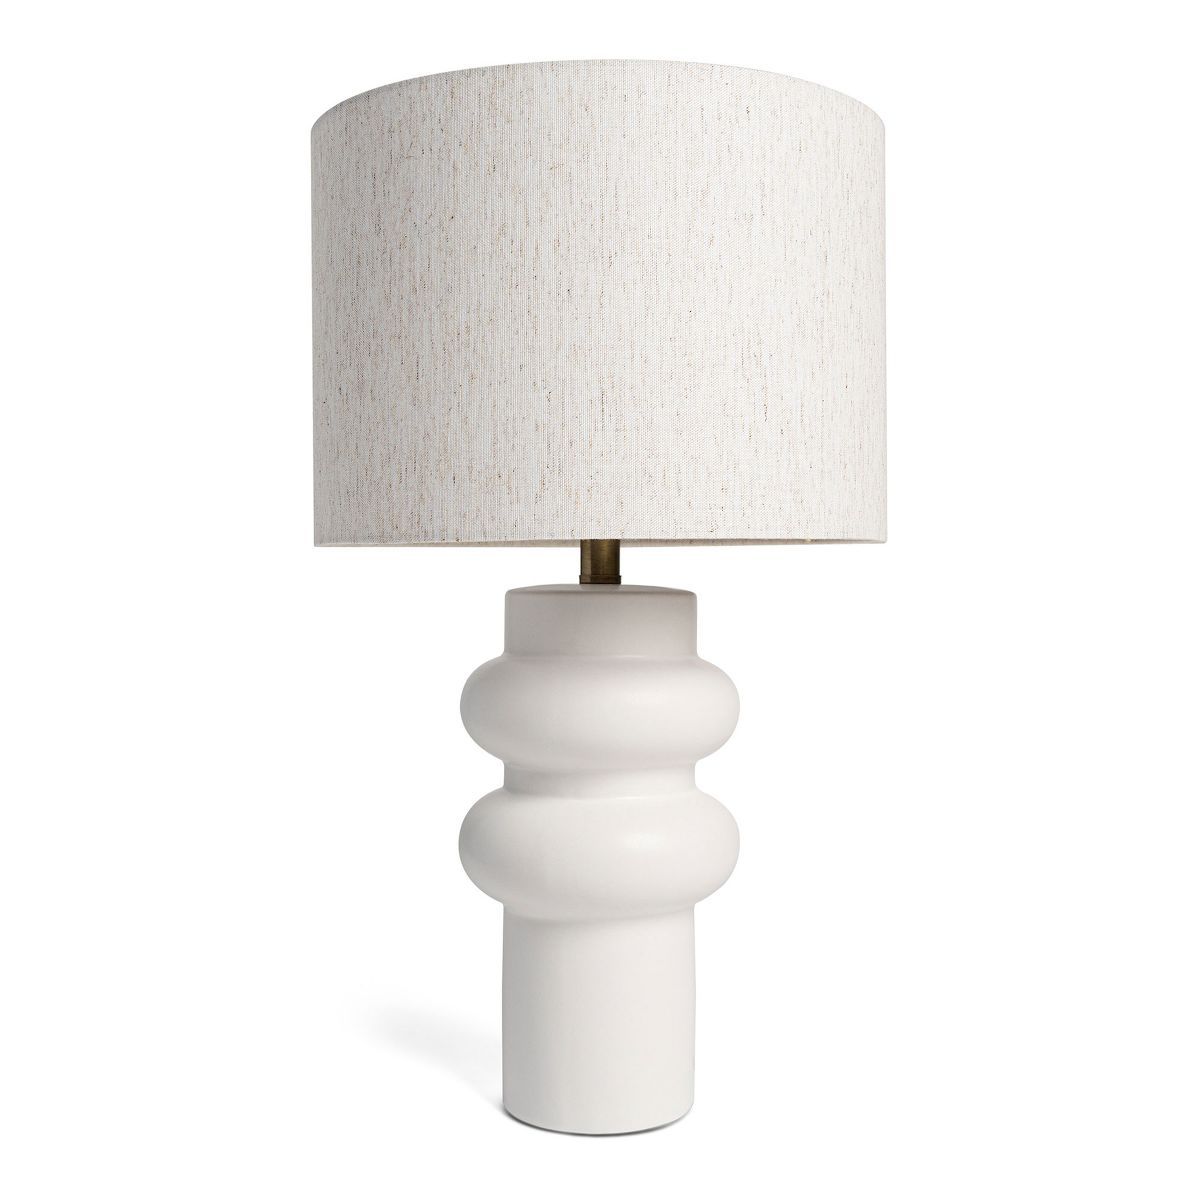 Villa Moda Nina-Hxy-1659 Table Lamp | Target